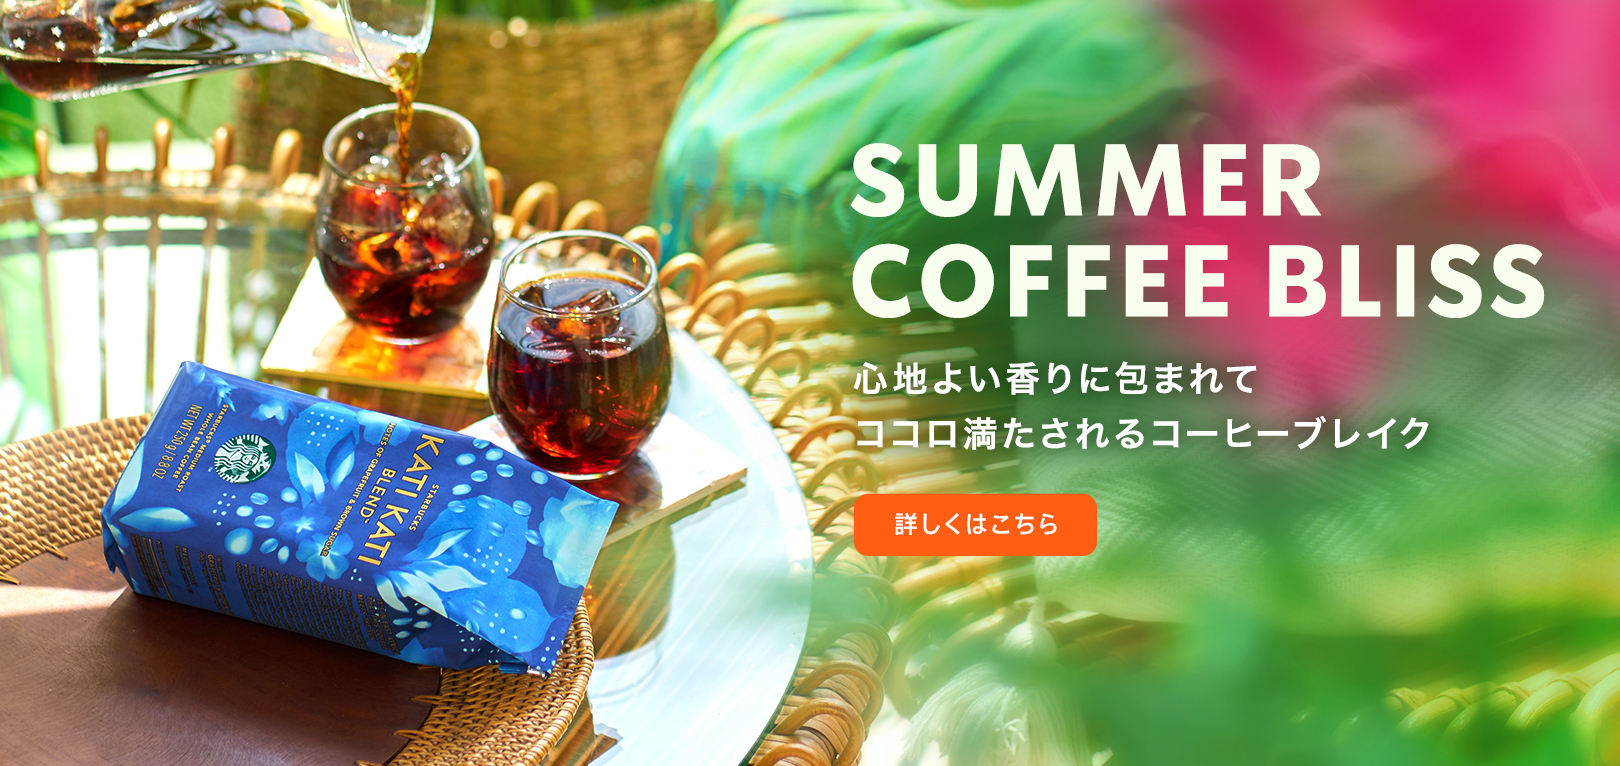 SUMMER COFFEE BLISS 心地よい香りにつつまれて ココロ満たされるコーヒーブレイク 詳しくはこちら